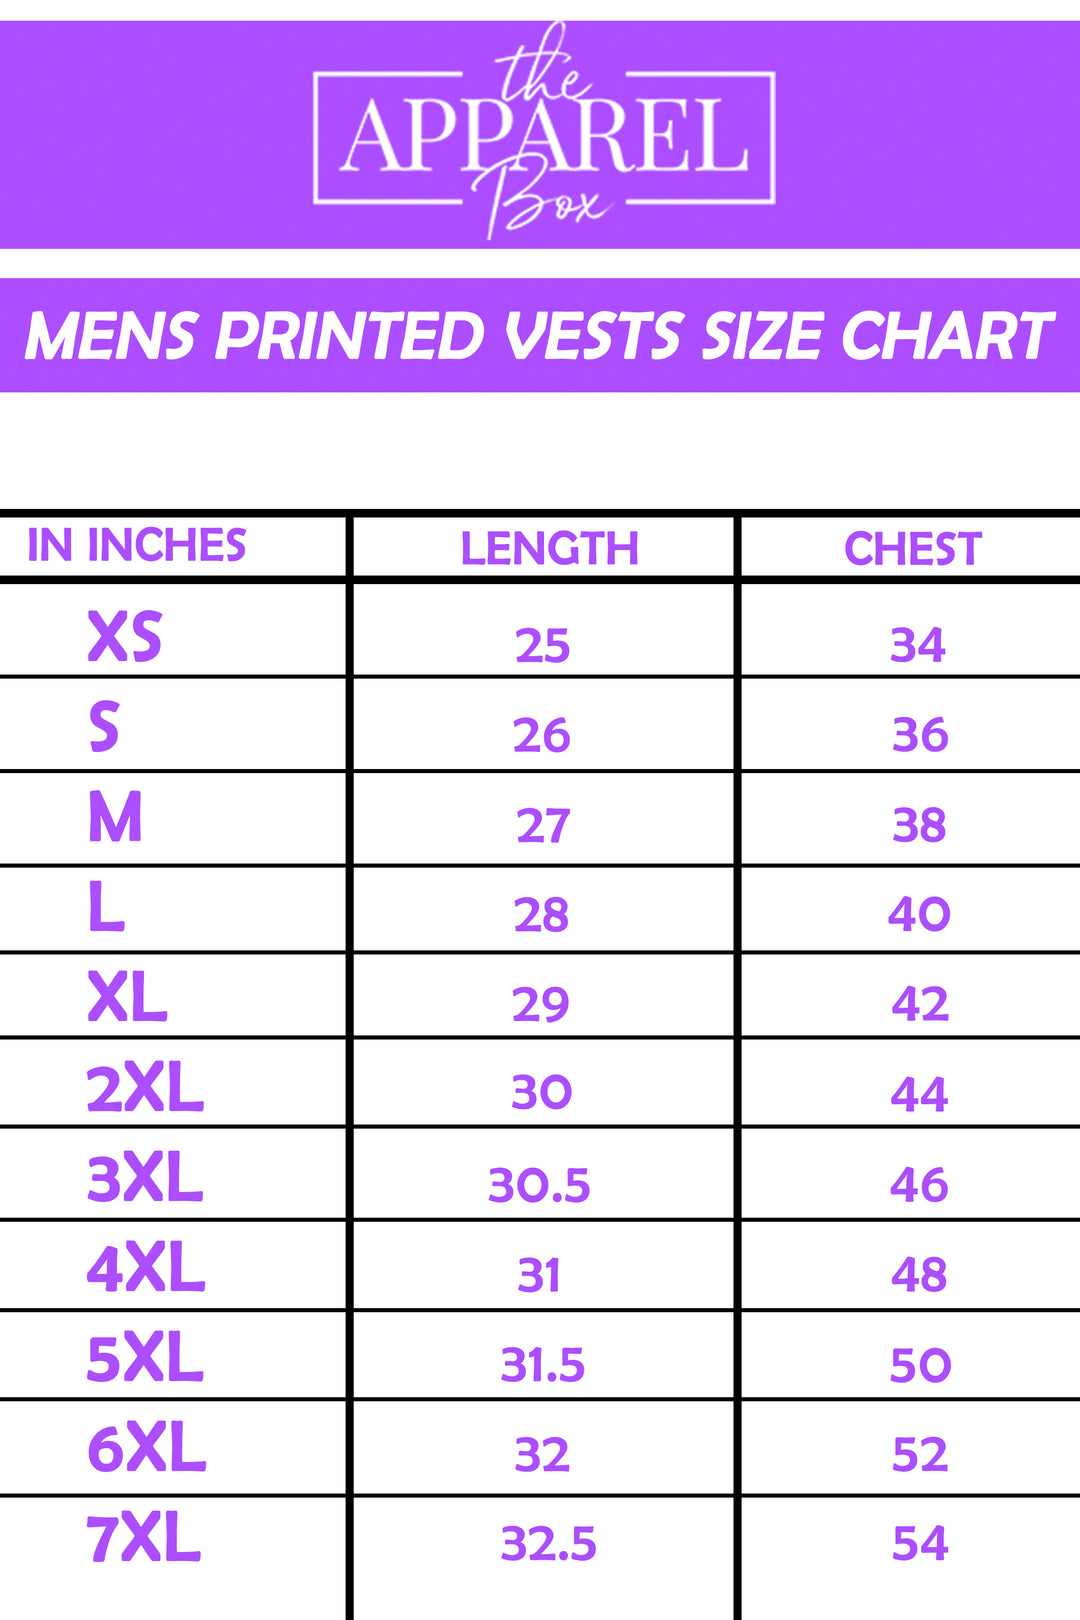 Printed Vest#4